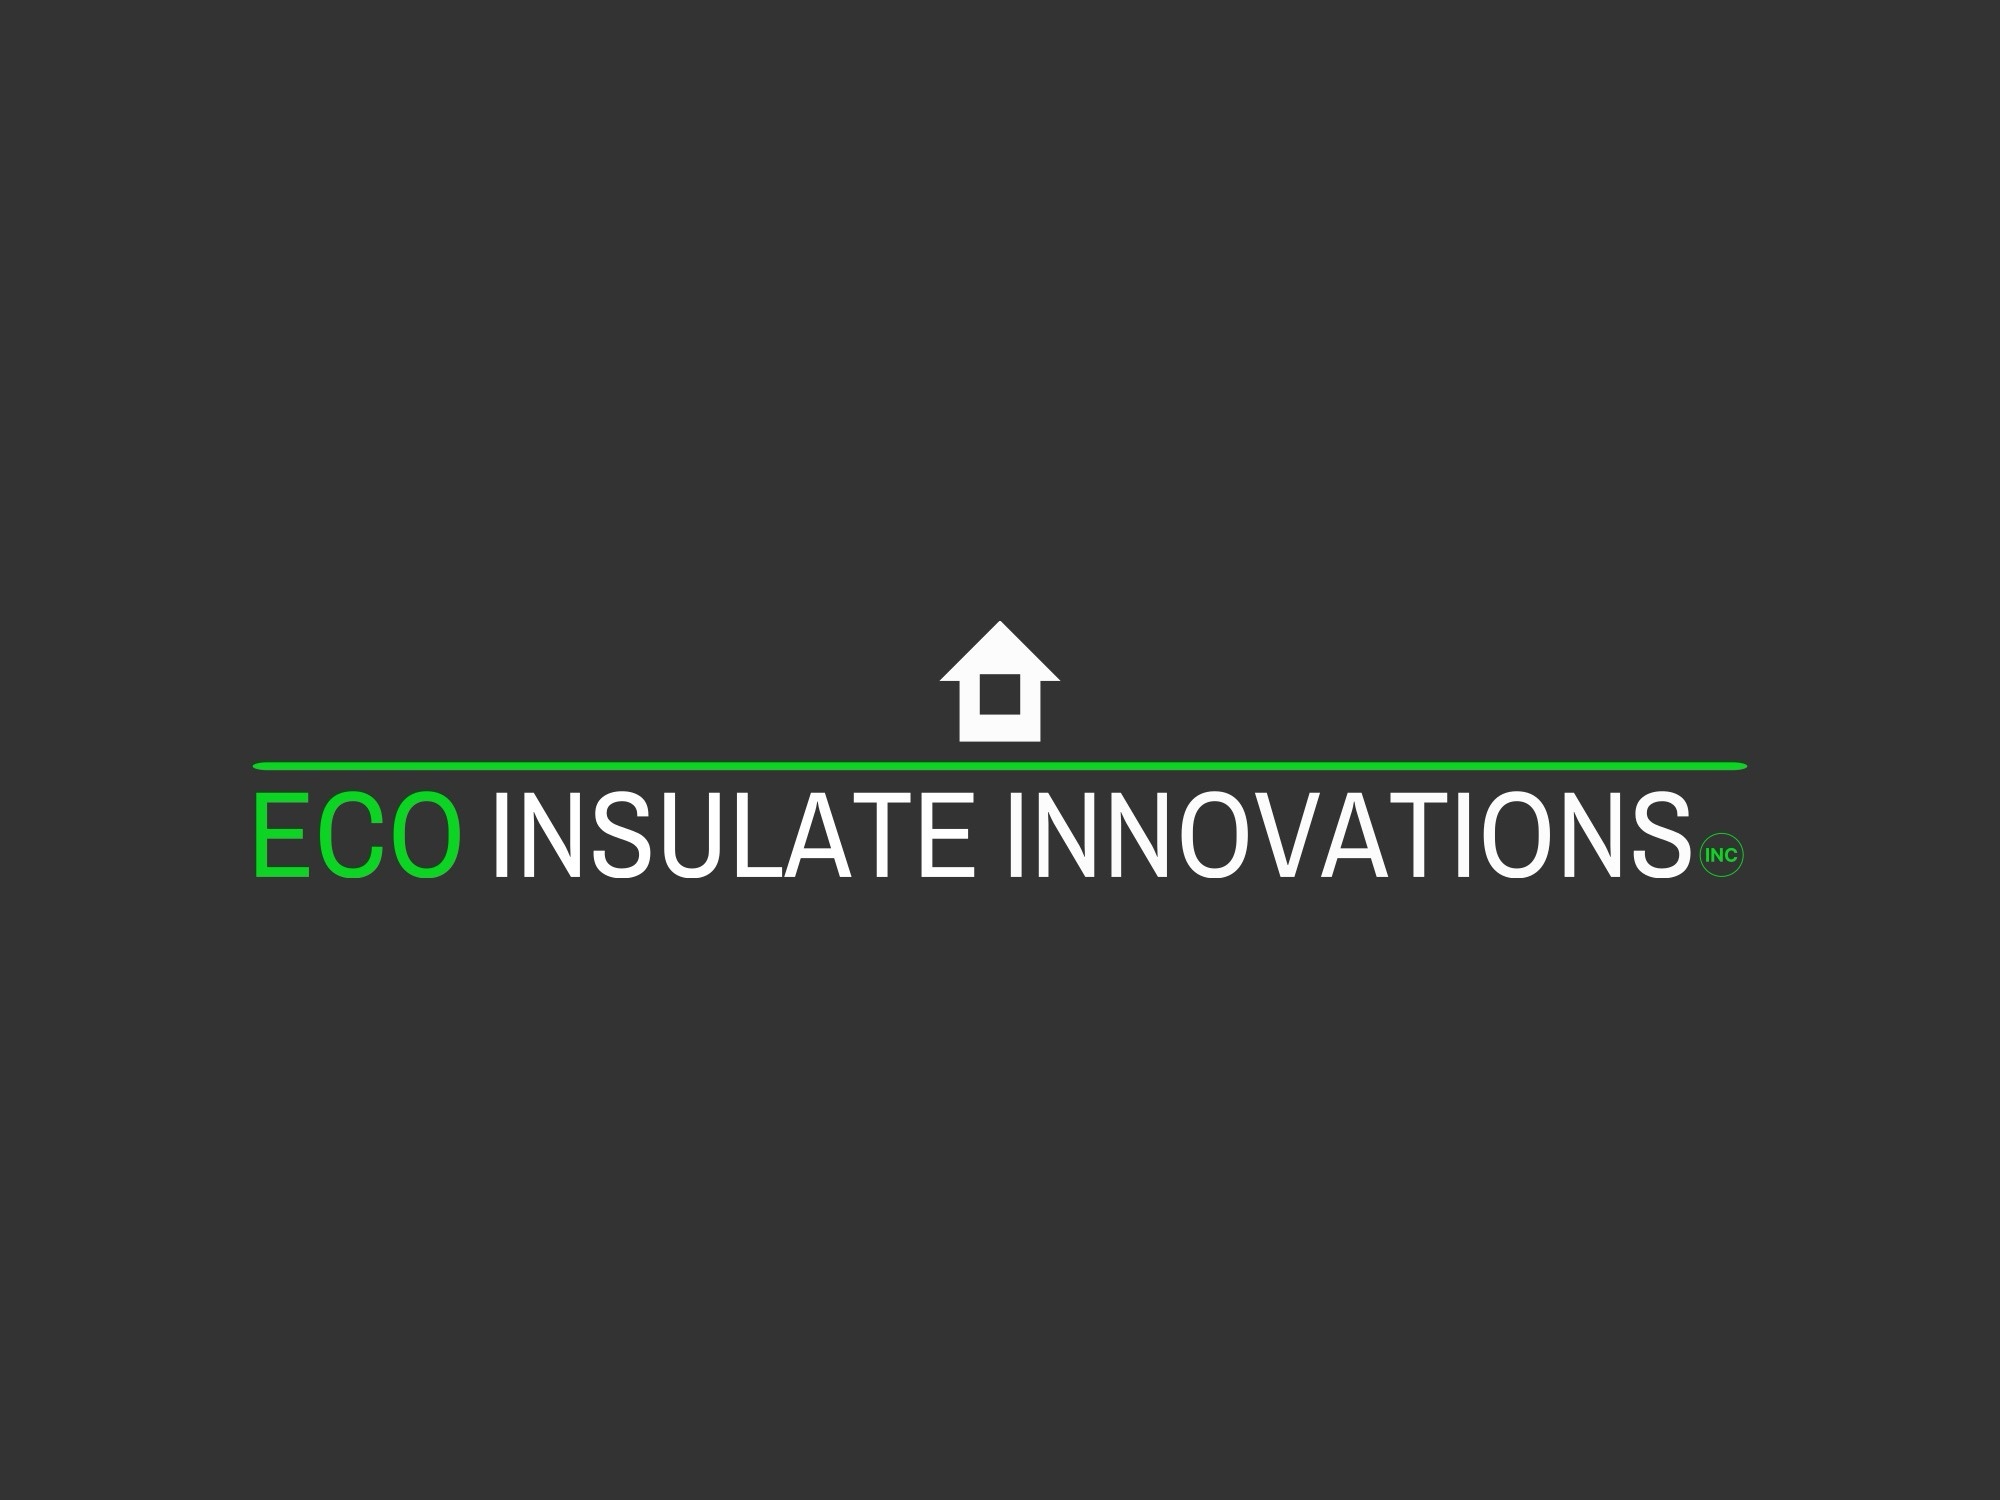 Eco Insulate Innovations inc's logo